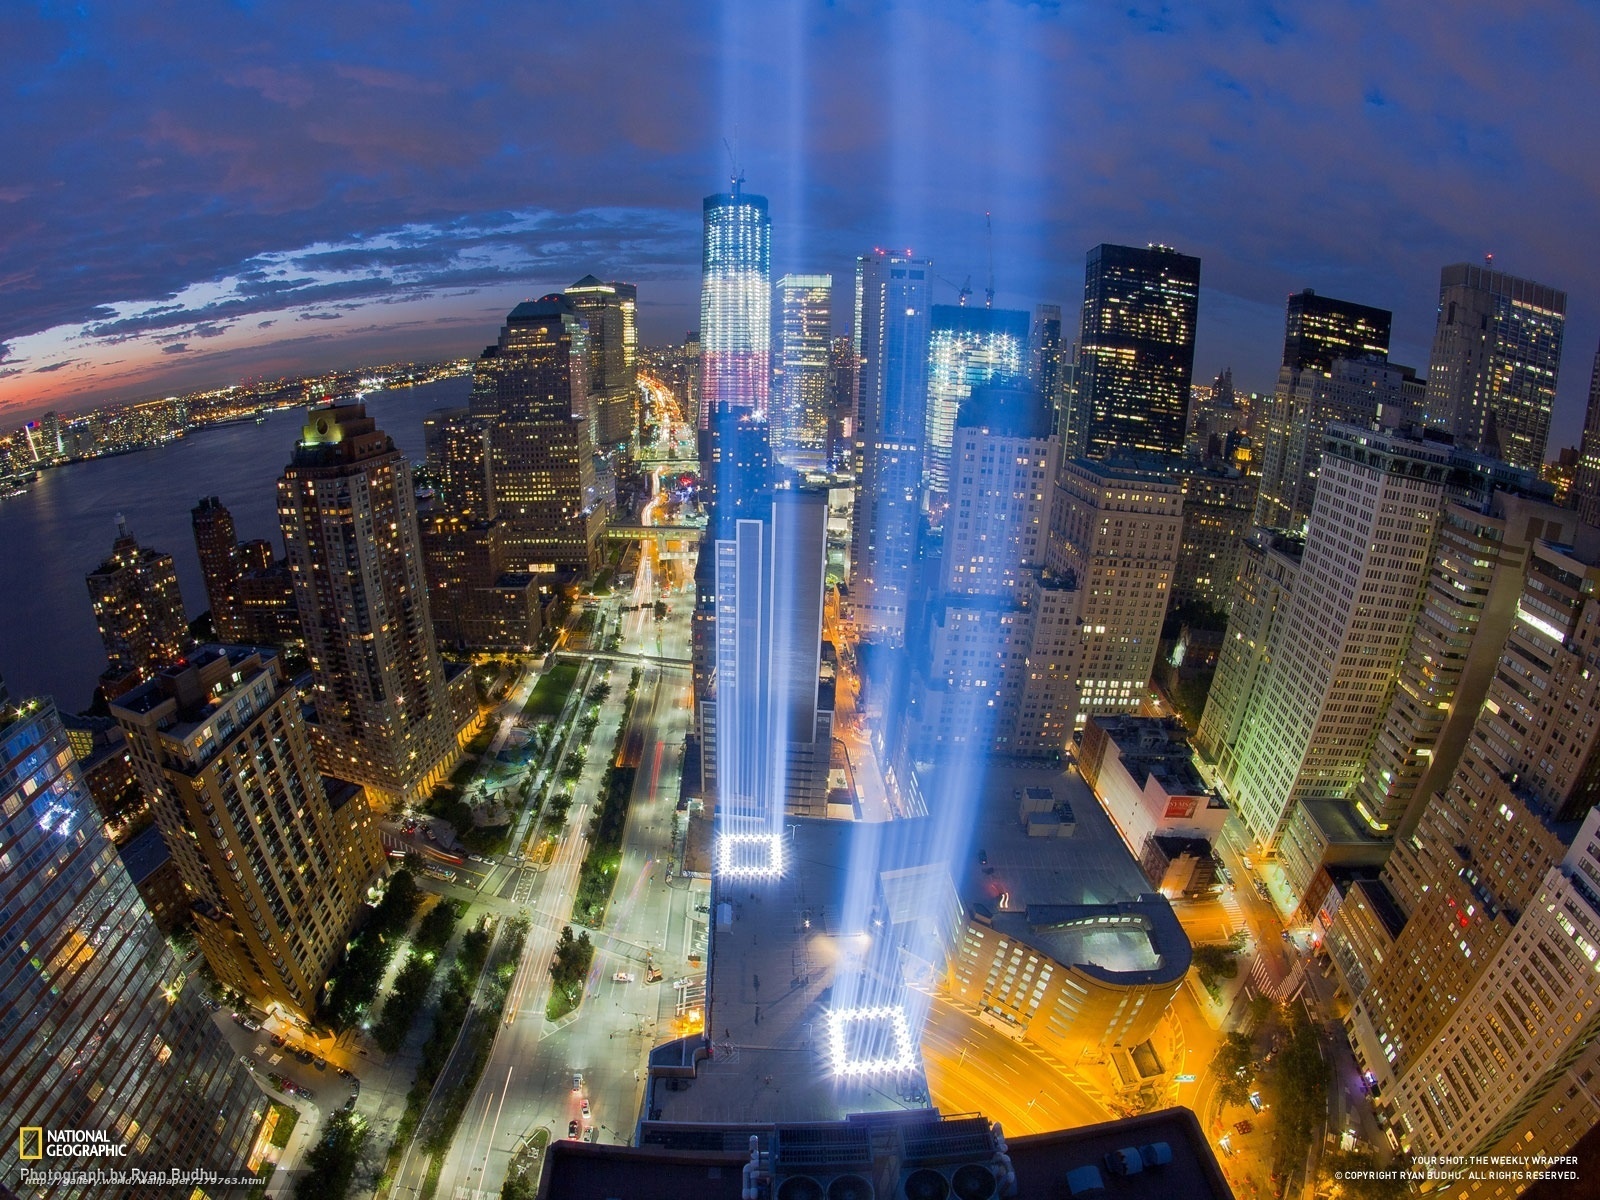 Download Wallpaper New York, September 11, Memory, - 9 11 Memorial Lights At Night - HD Wallpaper 